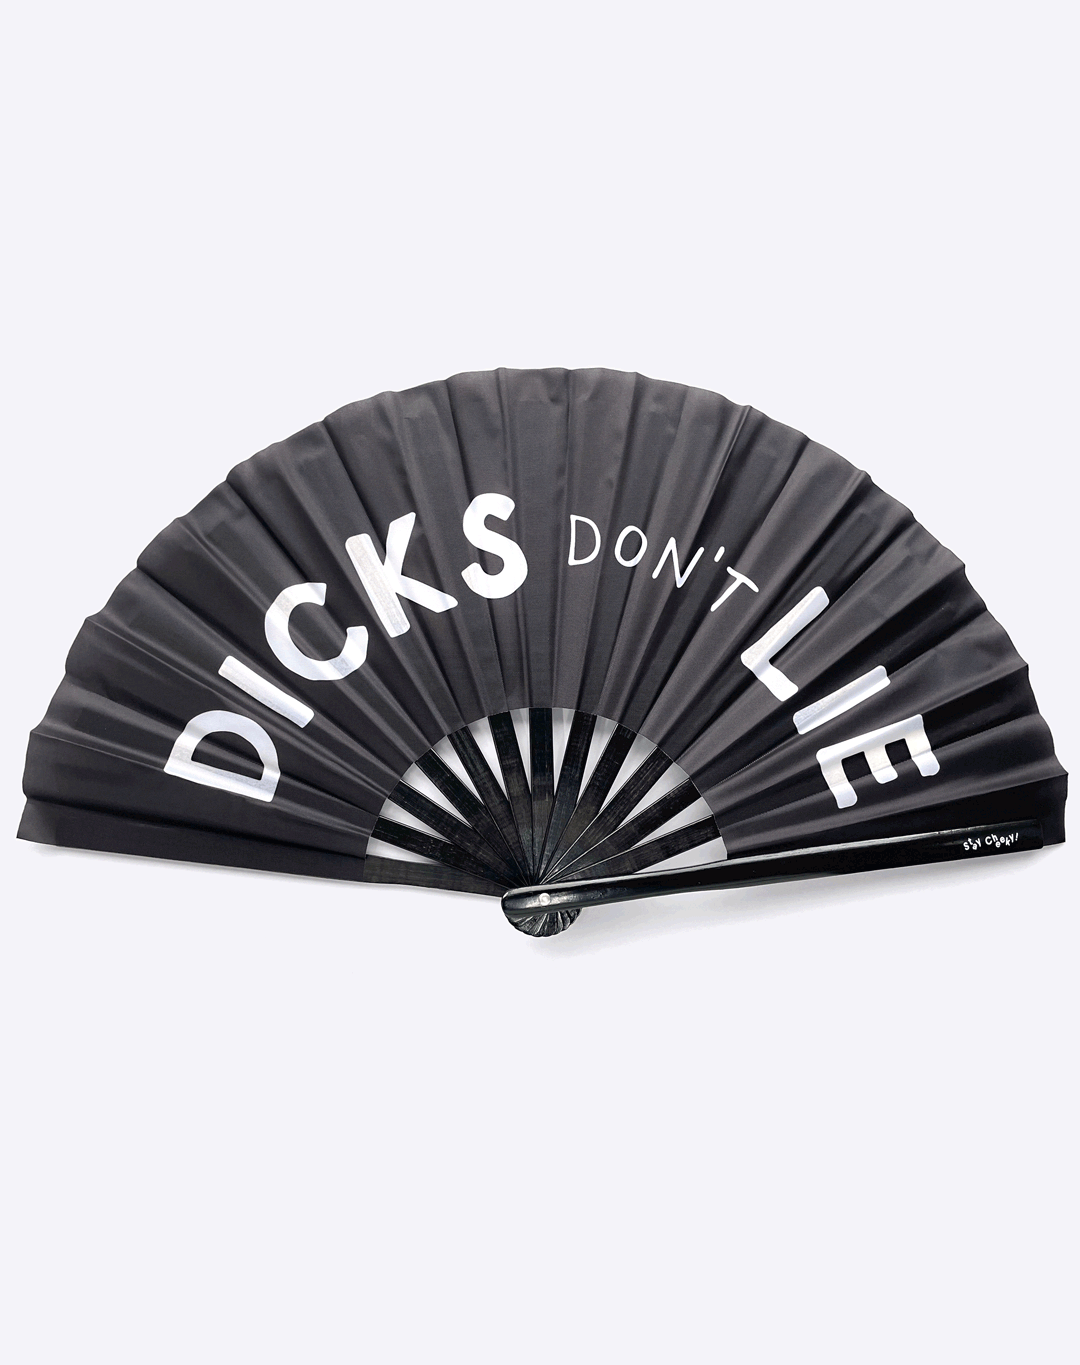 XL Fan - Dick's Don't Lie